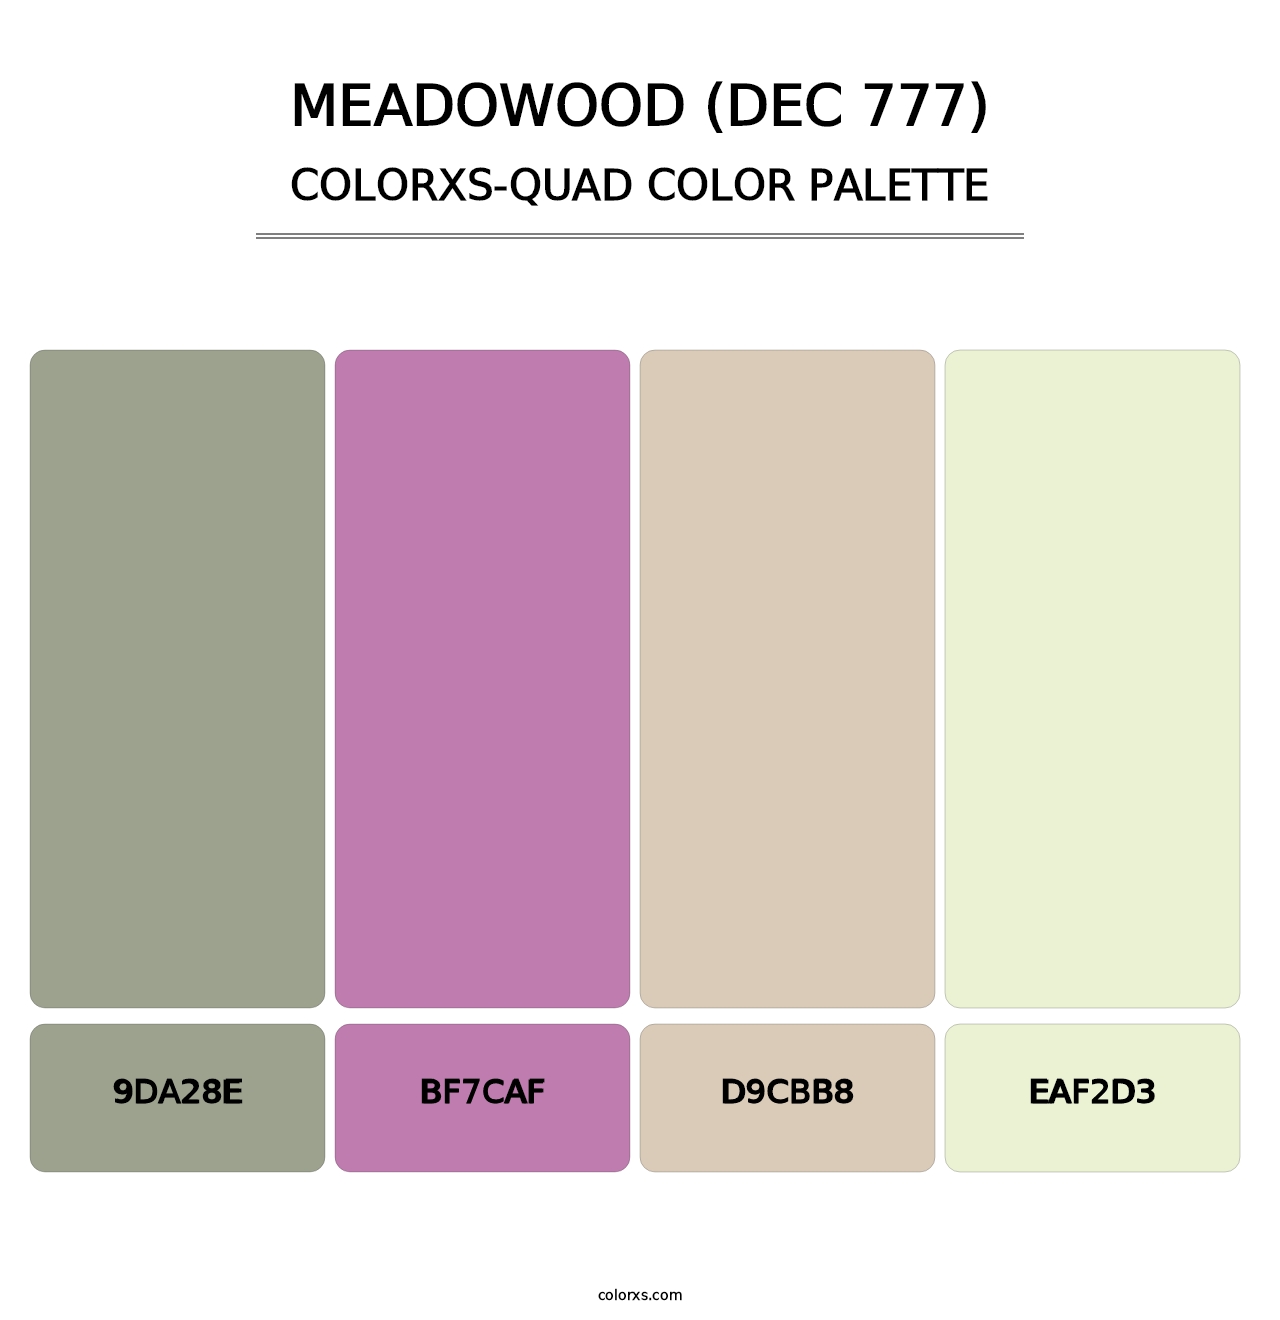 Meadowood (DEC 777) - Colorxs Quad Palette